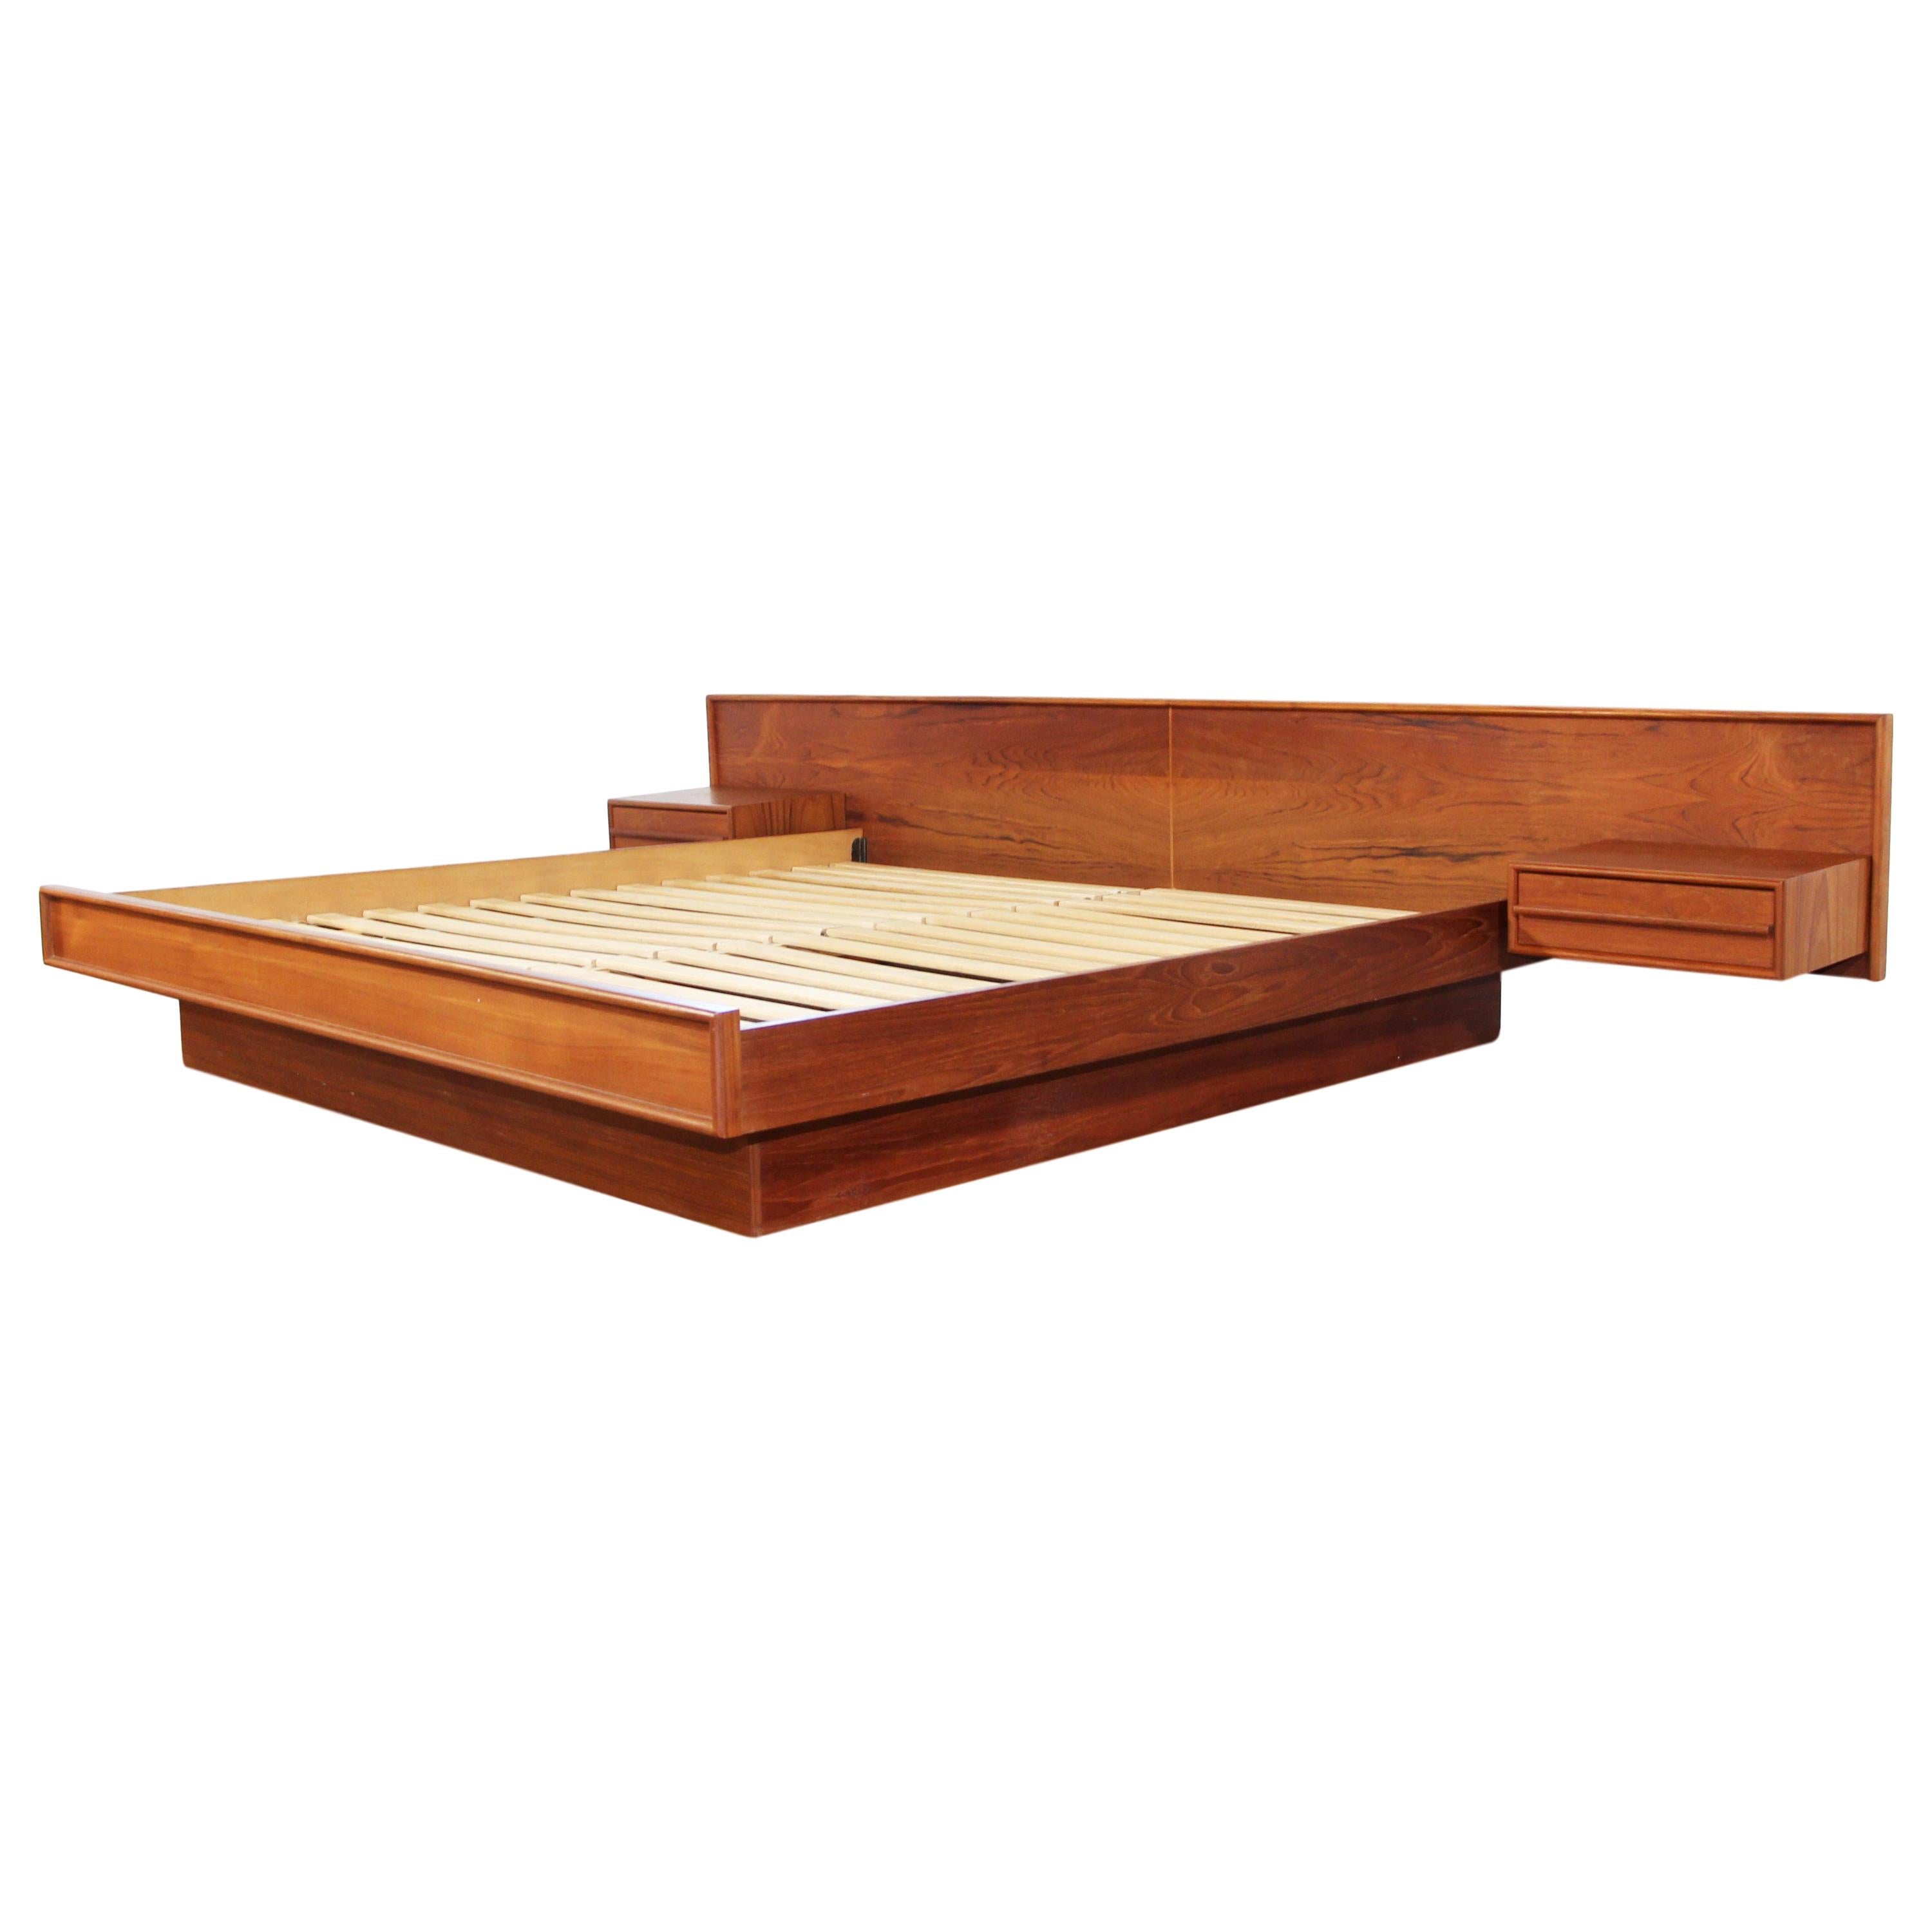 Midcentury King Size Teak Platform Bed, Danish Bed Frame Uk